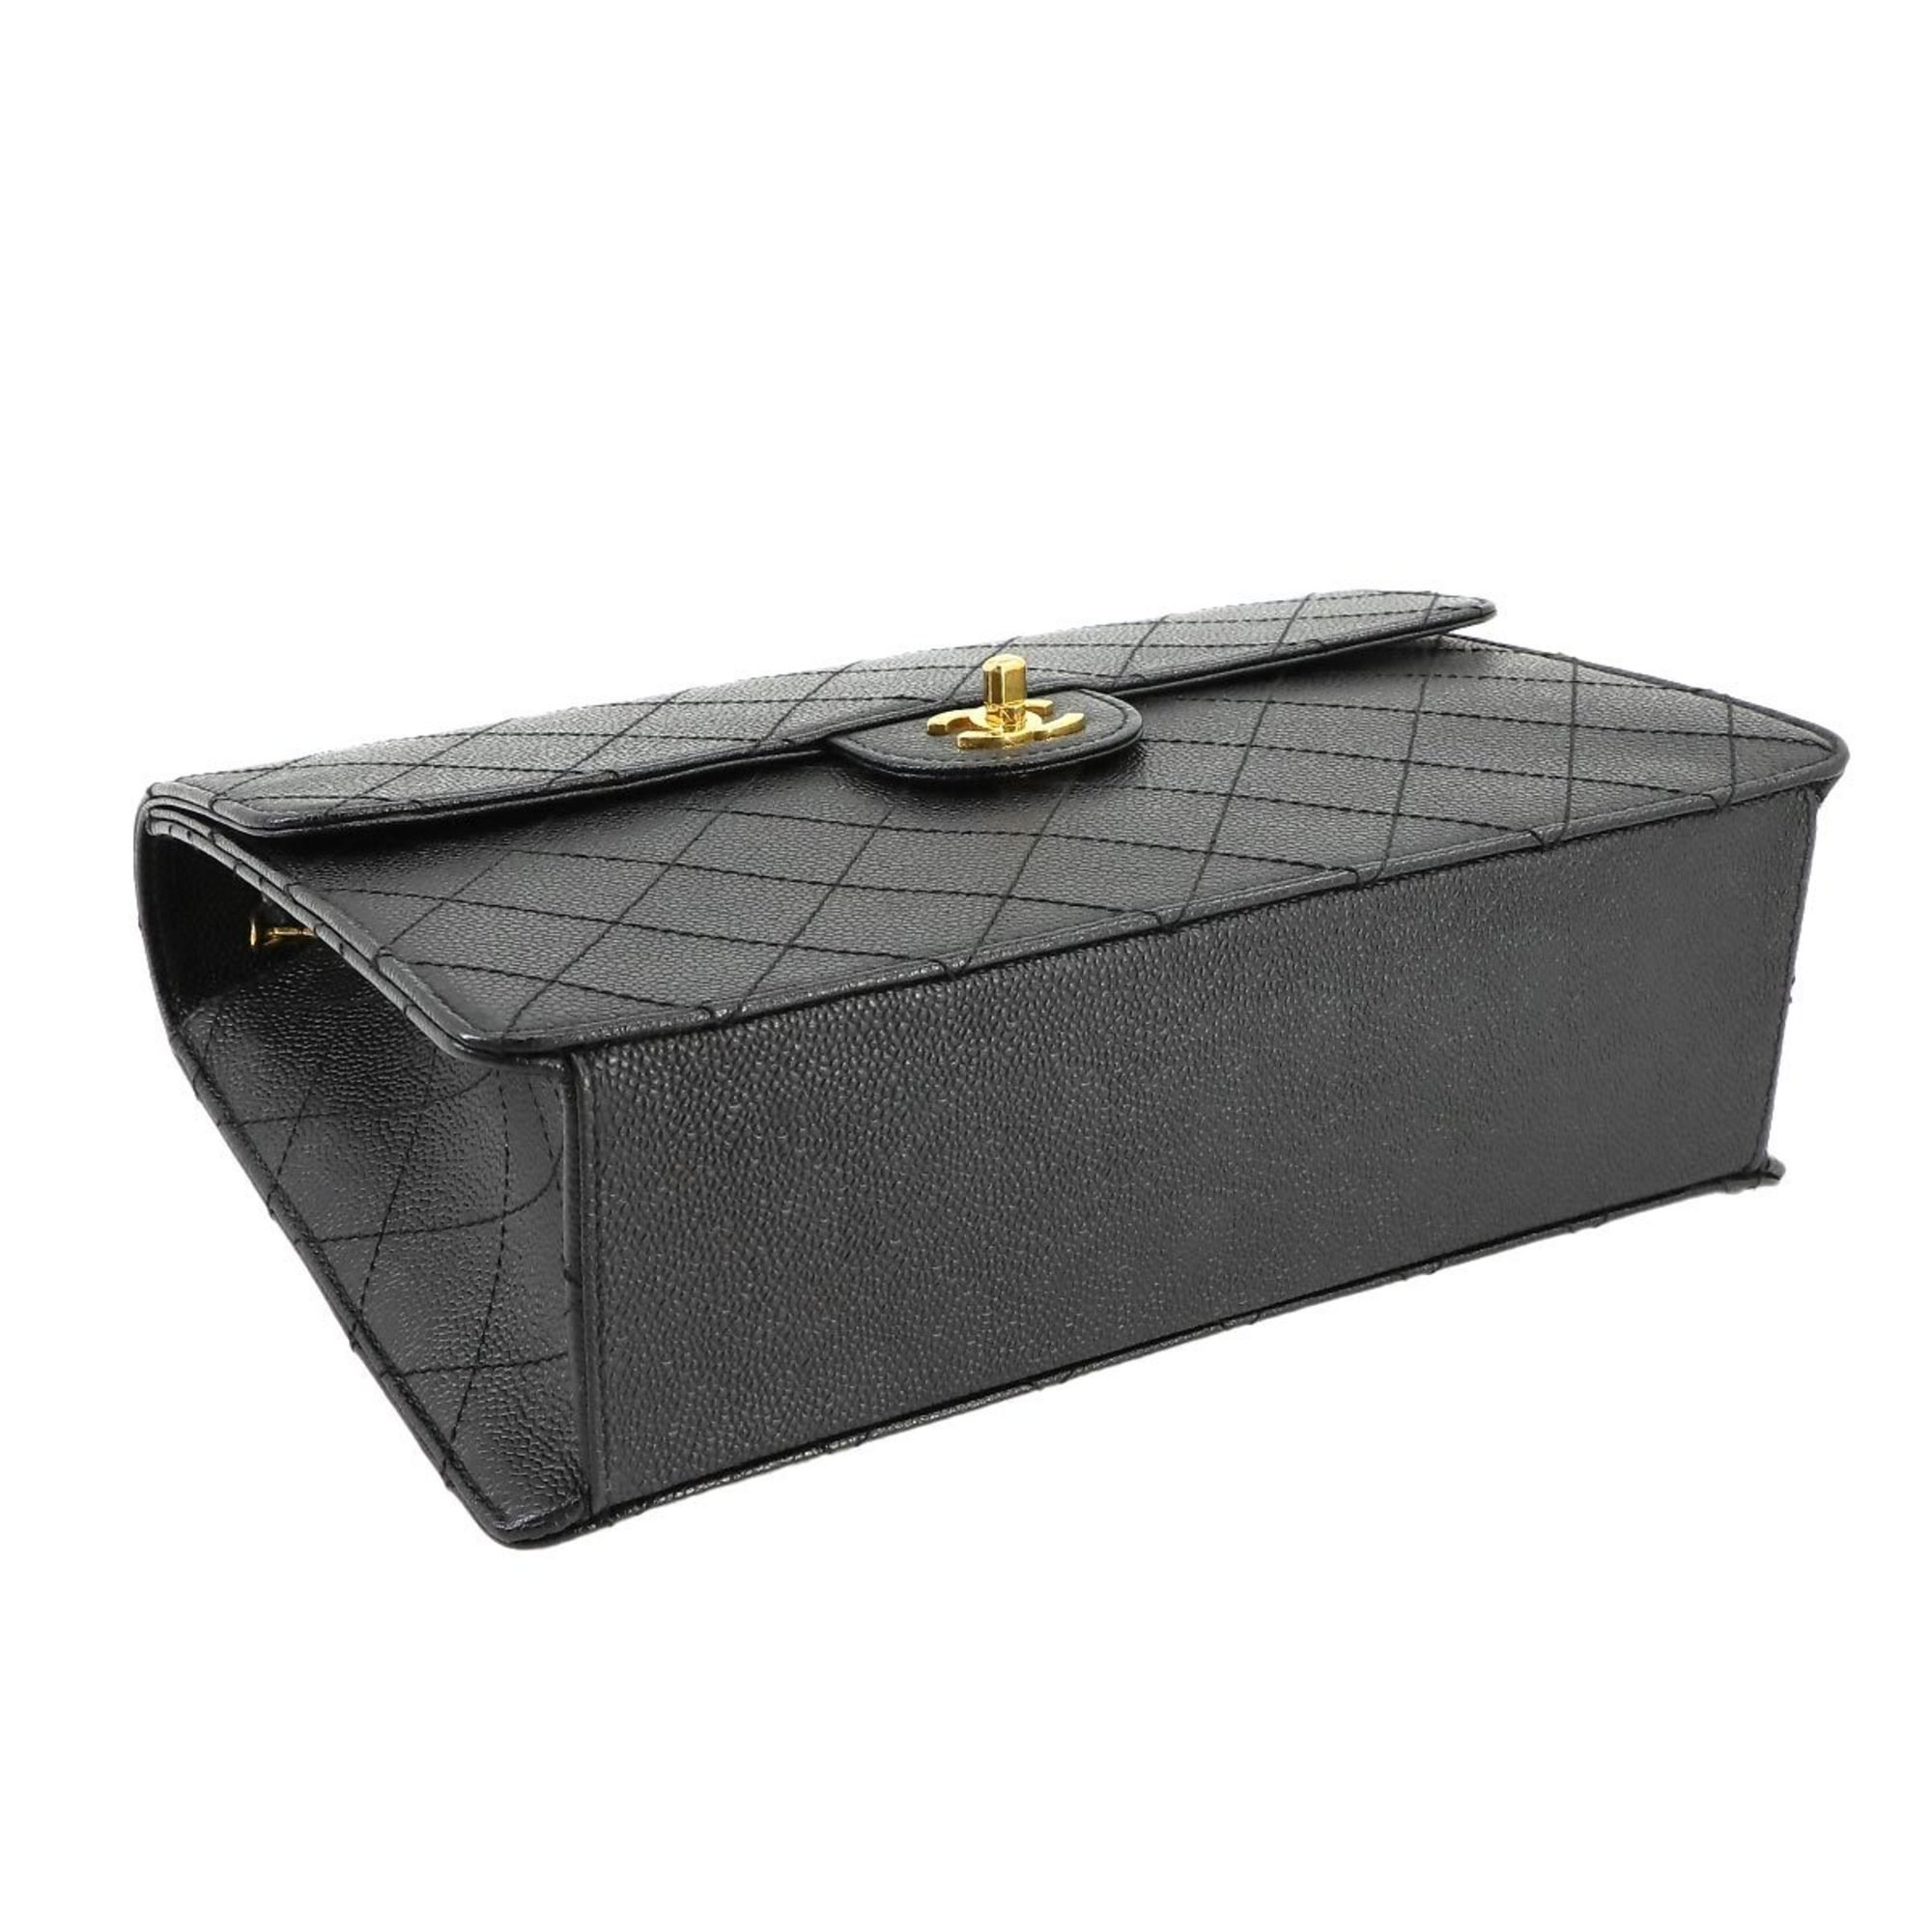 CHANEL Matelasse Chain Shoulder Bag Caviar Skin Leather Black Gold Hardware